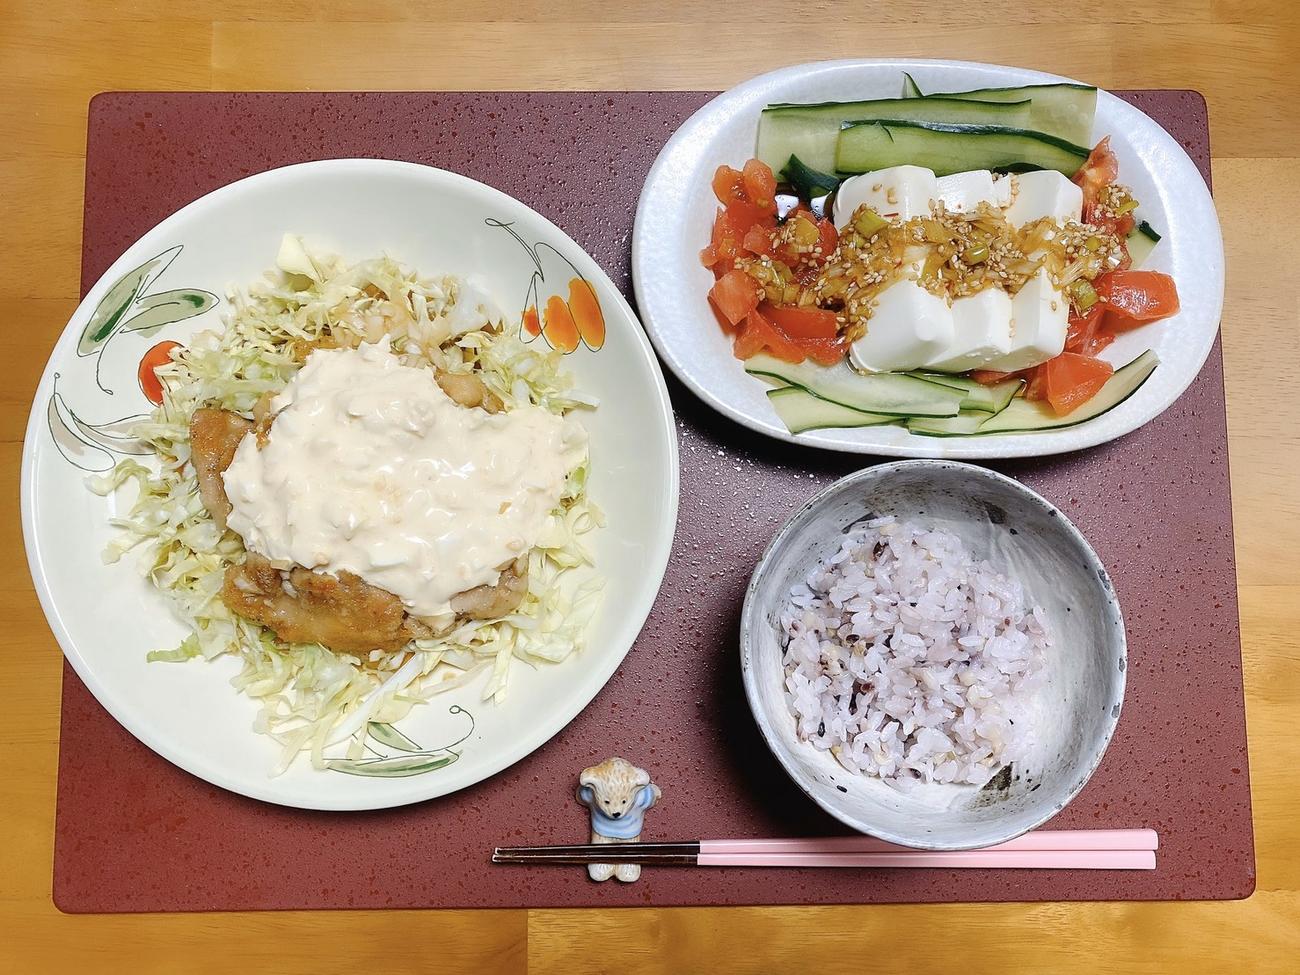 齊藤京子が母と一緒に作ったチキン南蛮と豆腐のゴマ風味サラダ。タルタルソースから作ったという